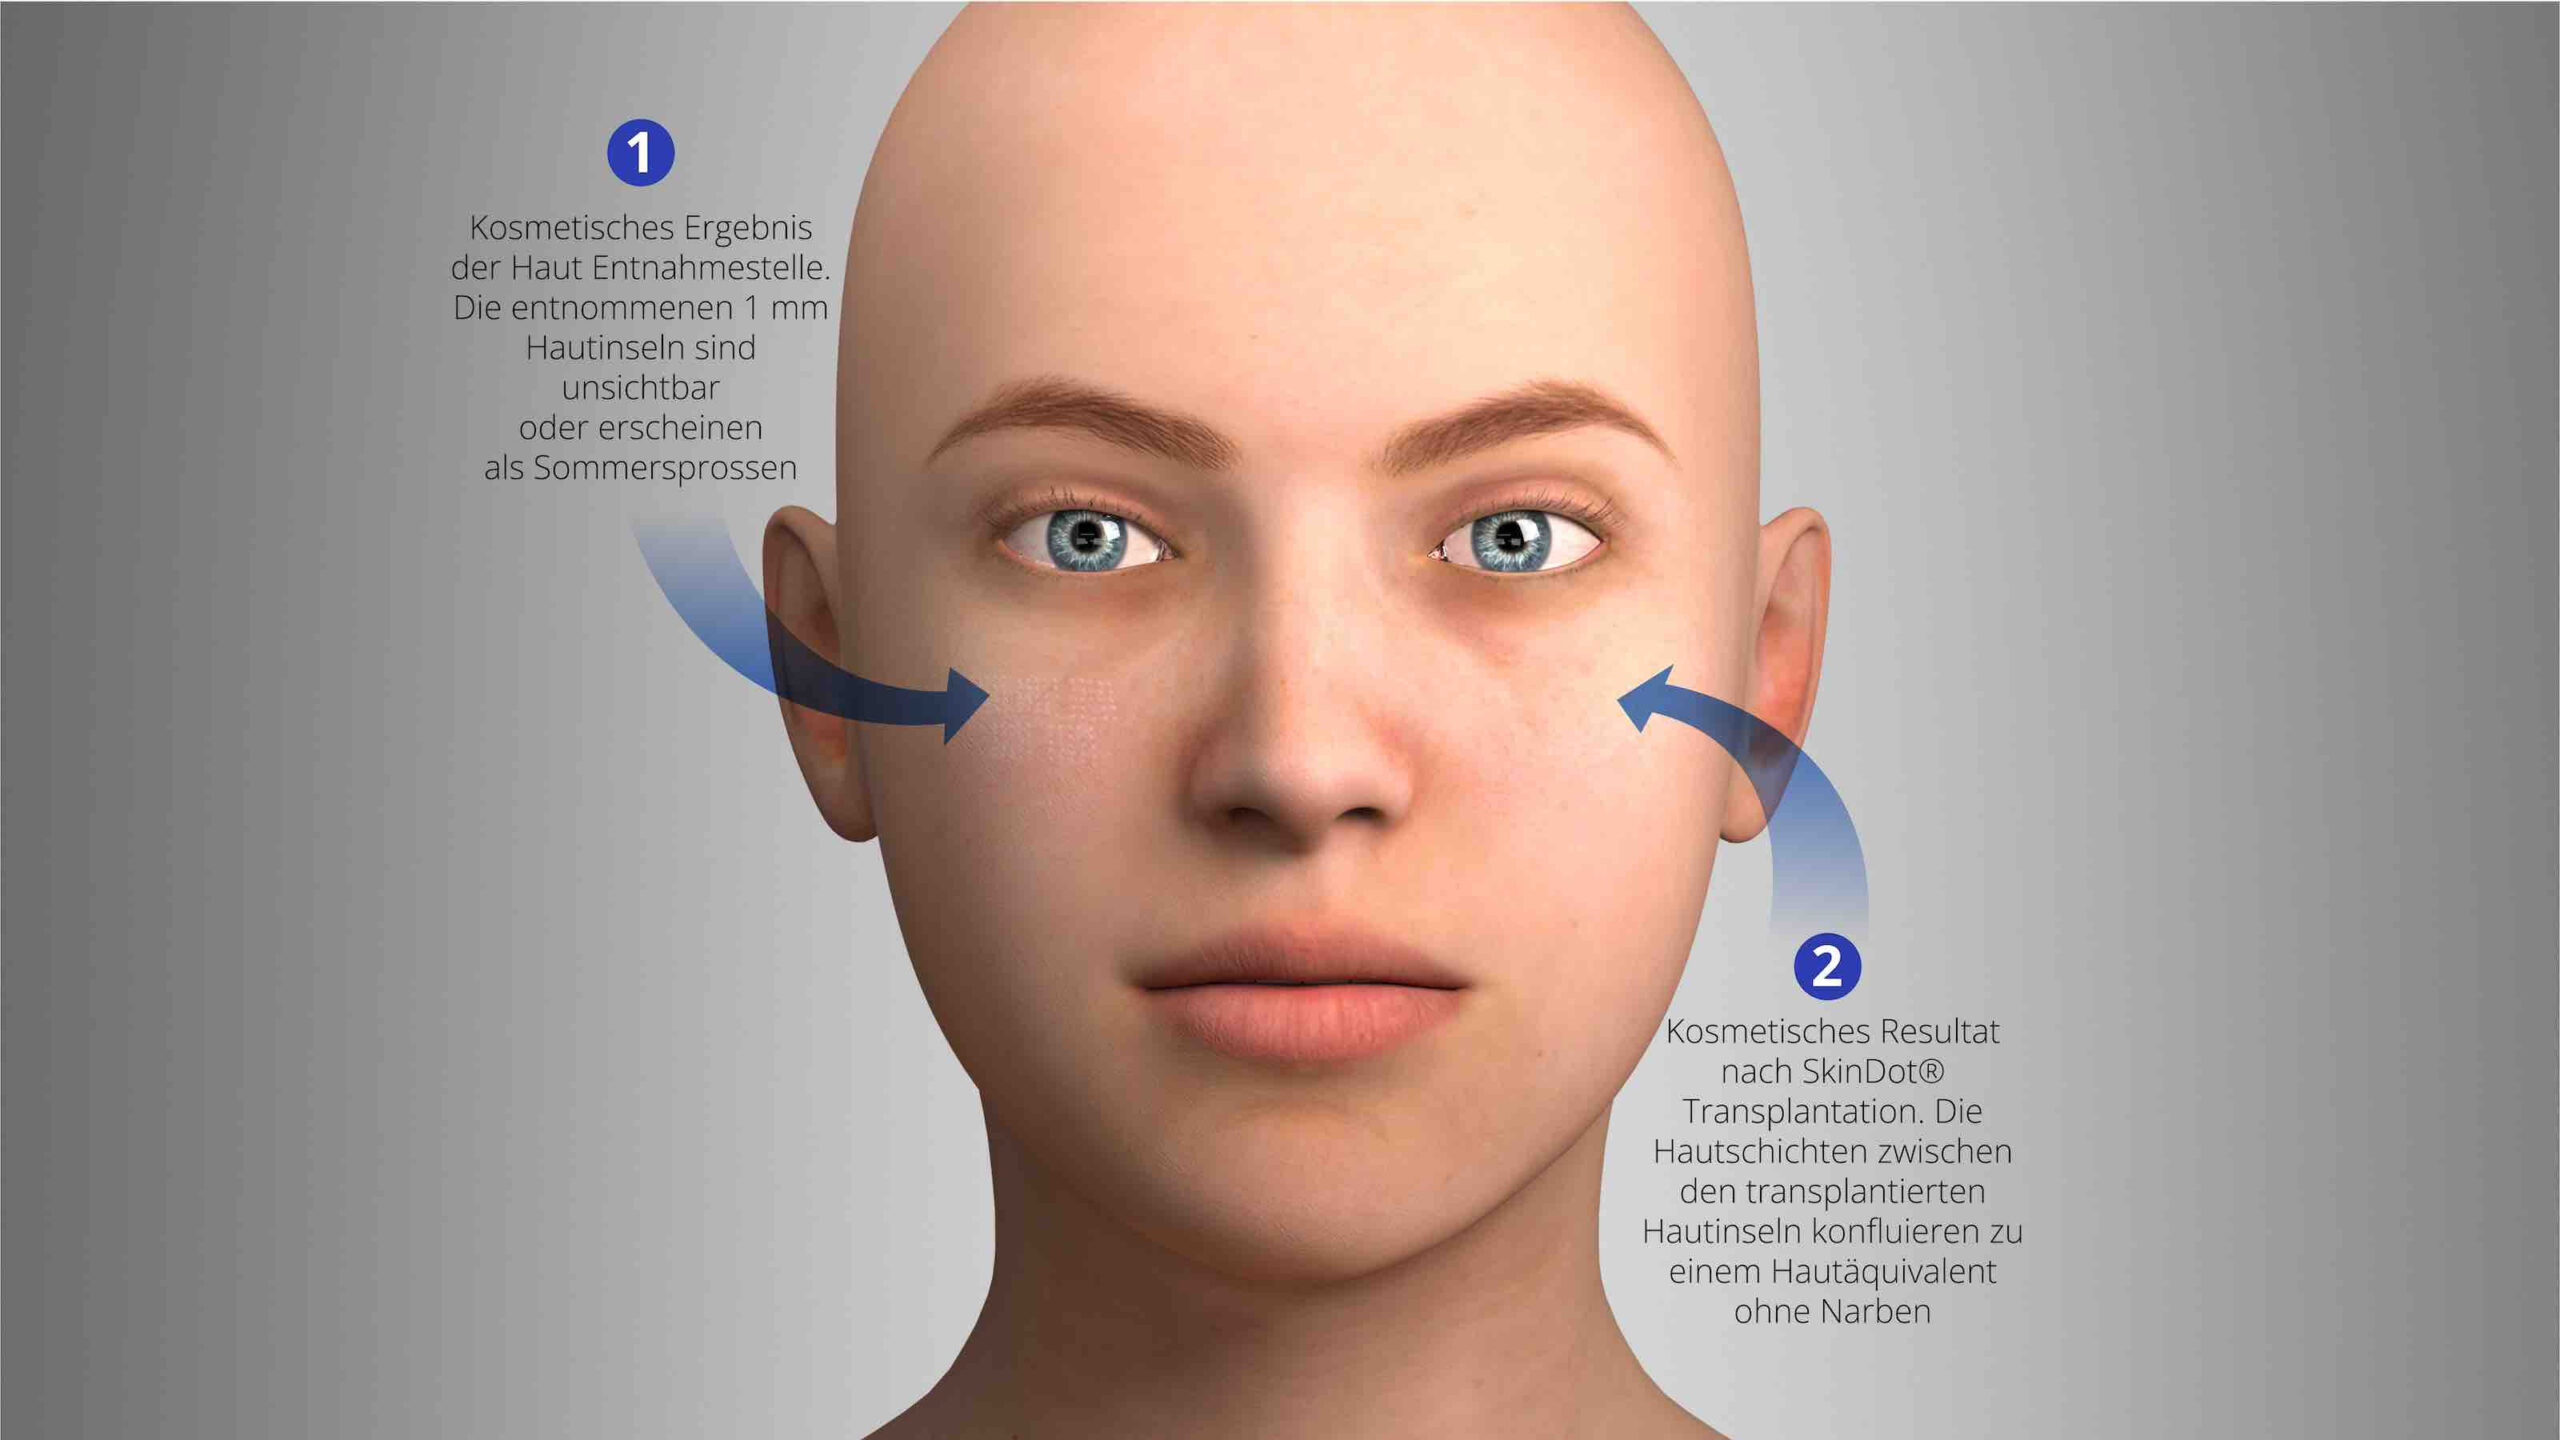 SkinDot Hauttransplantation kosmetisches Ergebnis